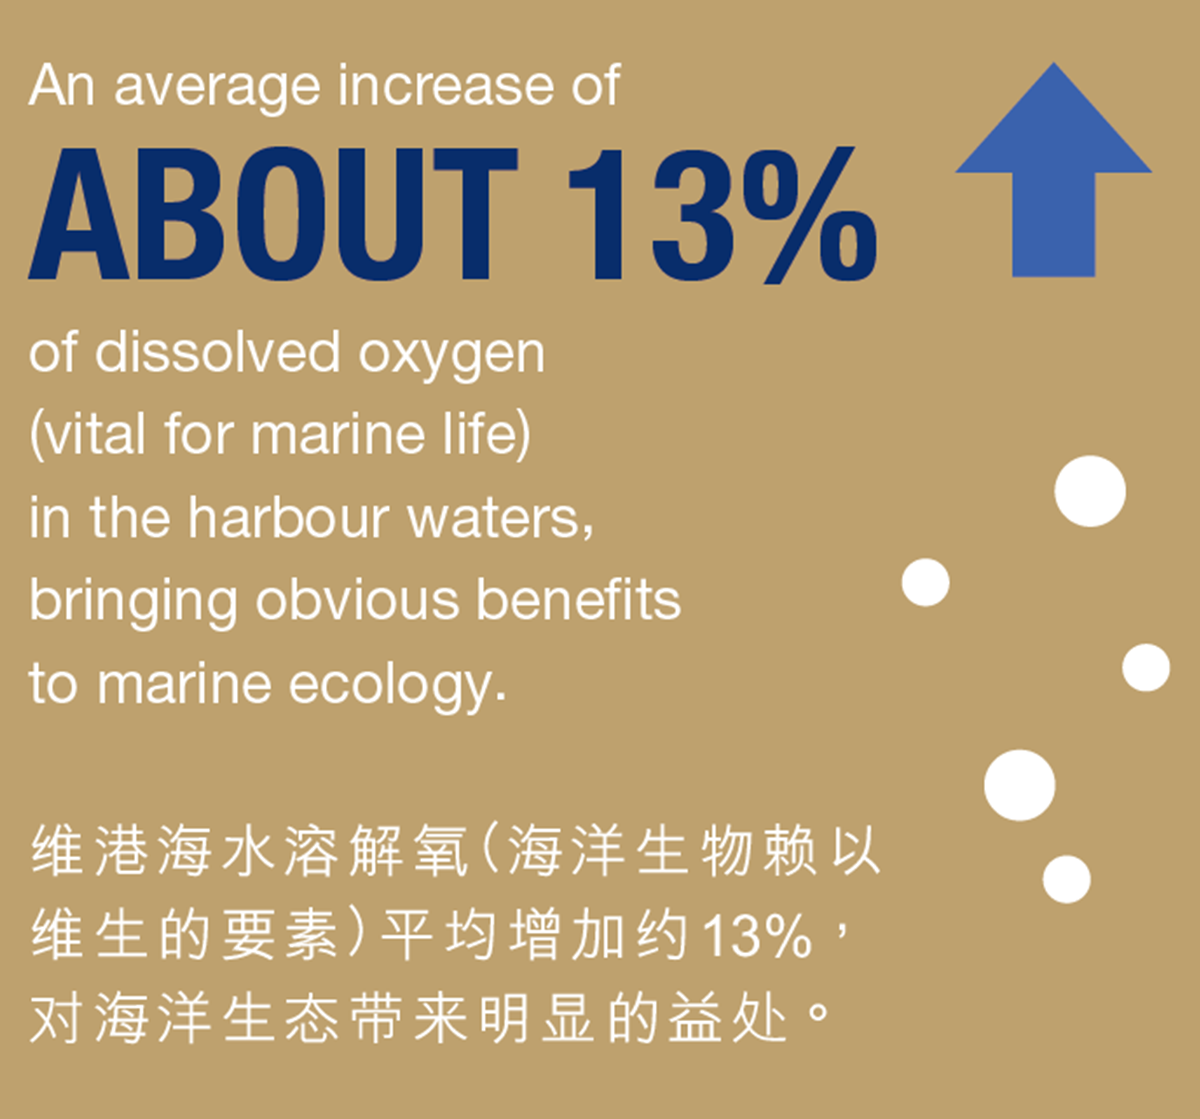 维港海水溶解氧（海洋生物赖以 维生的要素）平均增加约13%， 对海洋生态带来明显的益处。